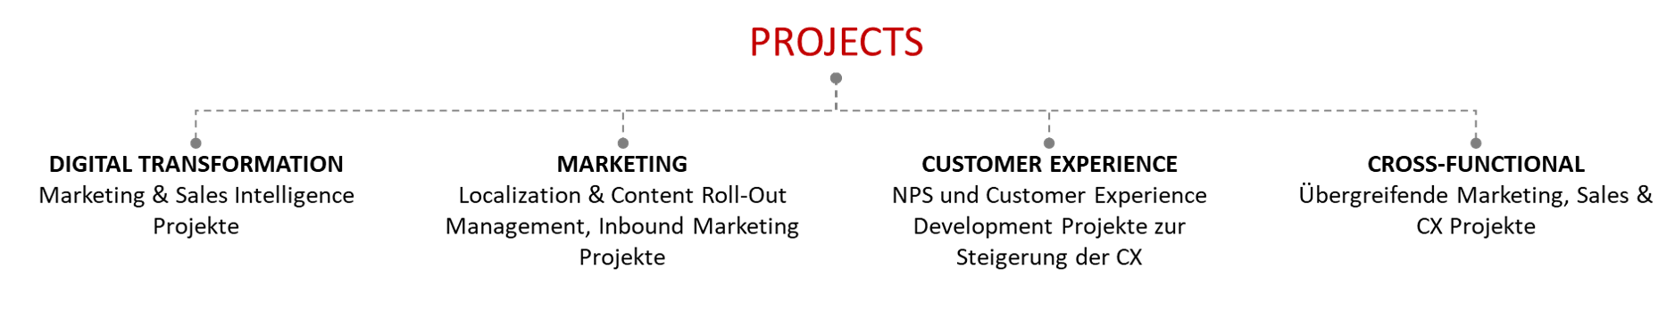 PDC - Projektmanagement - Projects